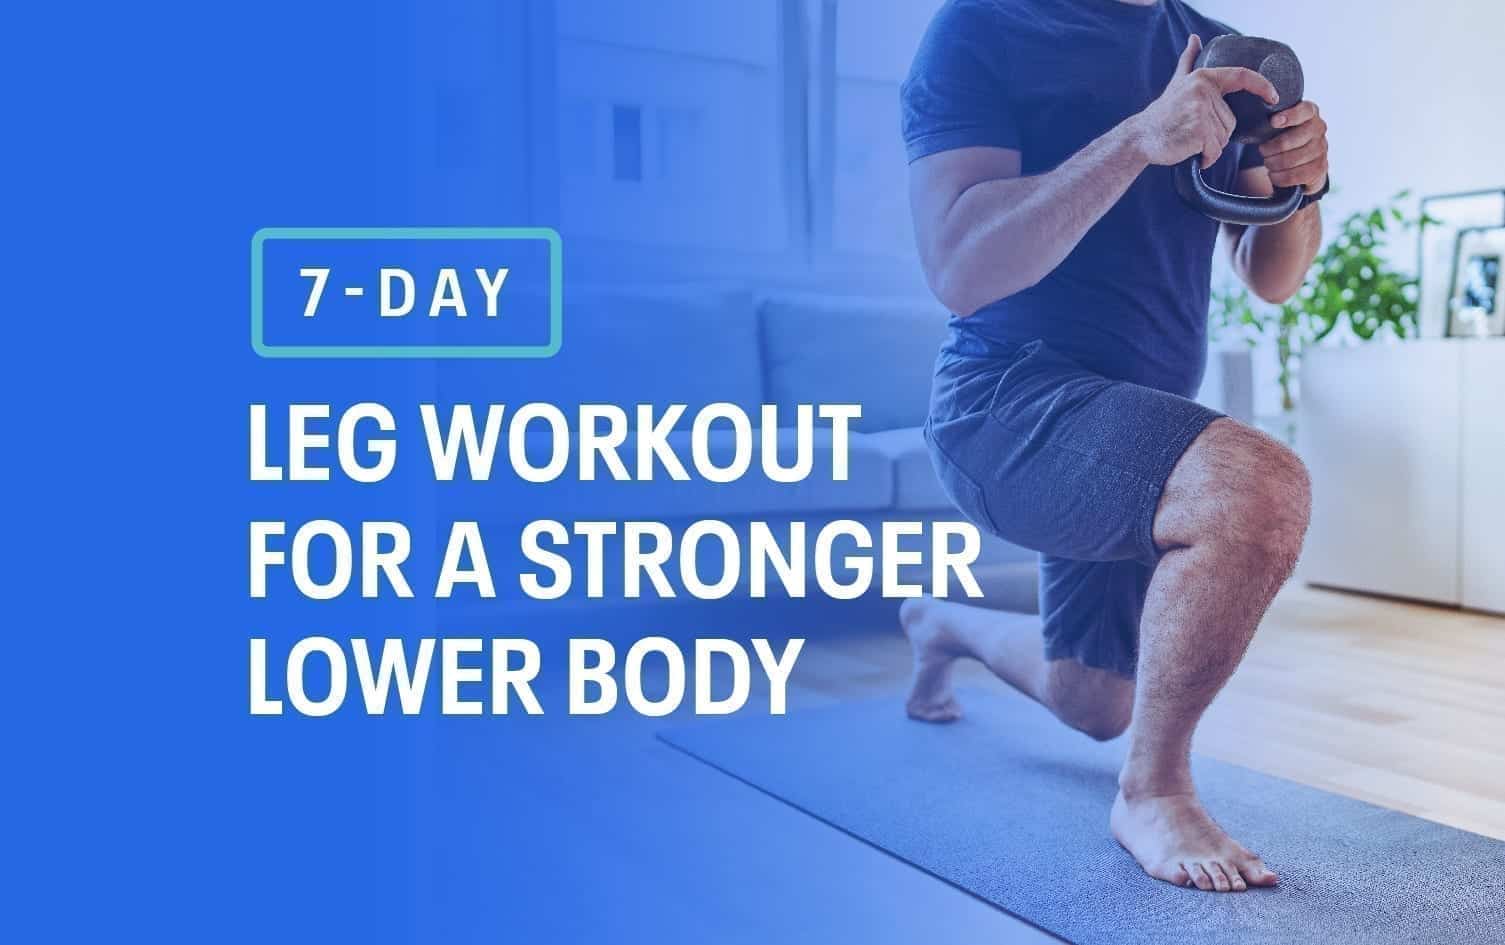 https://blog.myfitnesspal.com/wp-content/uploads/2021/05/MFP-7-Day-Leg-Workout-insta.jpg